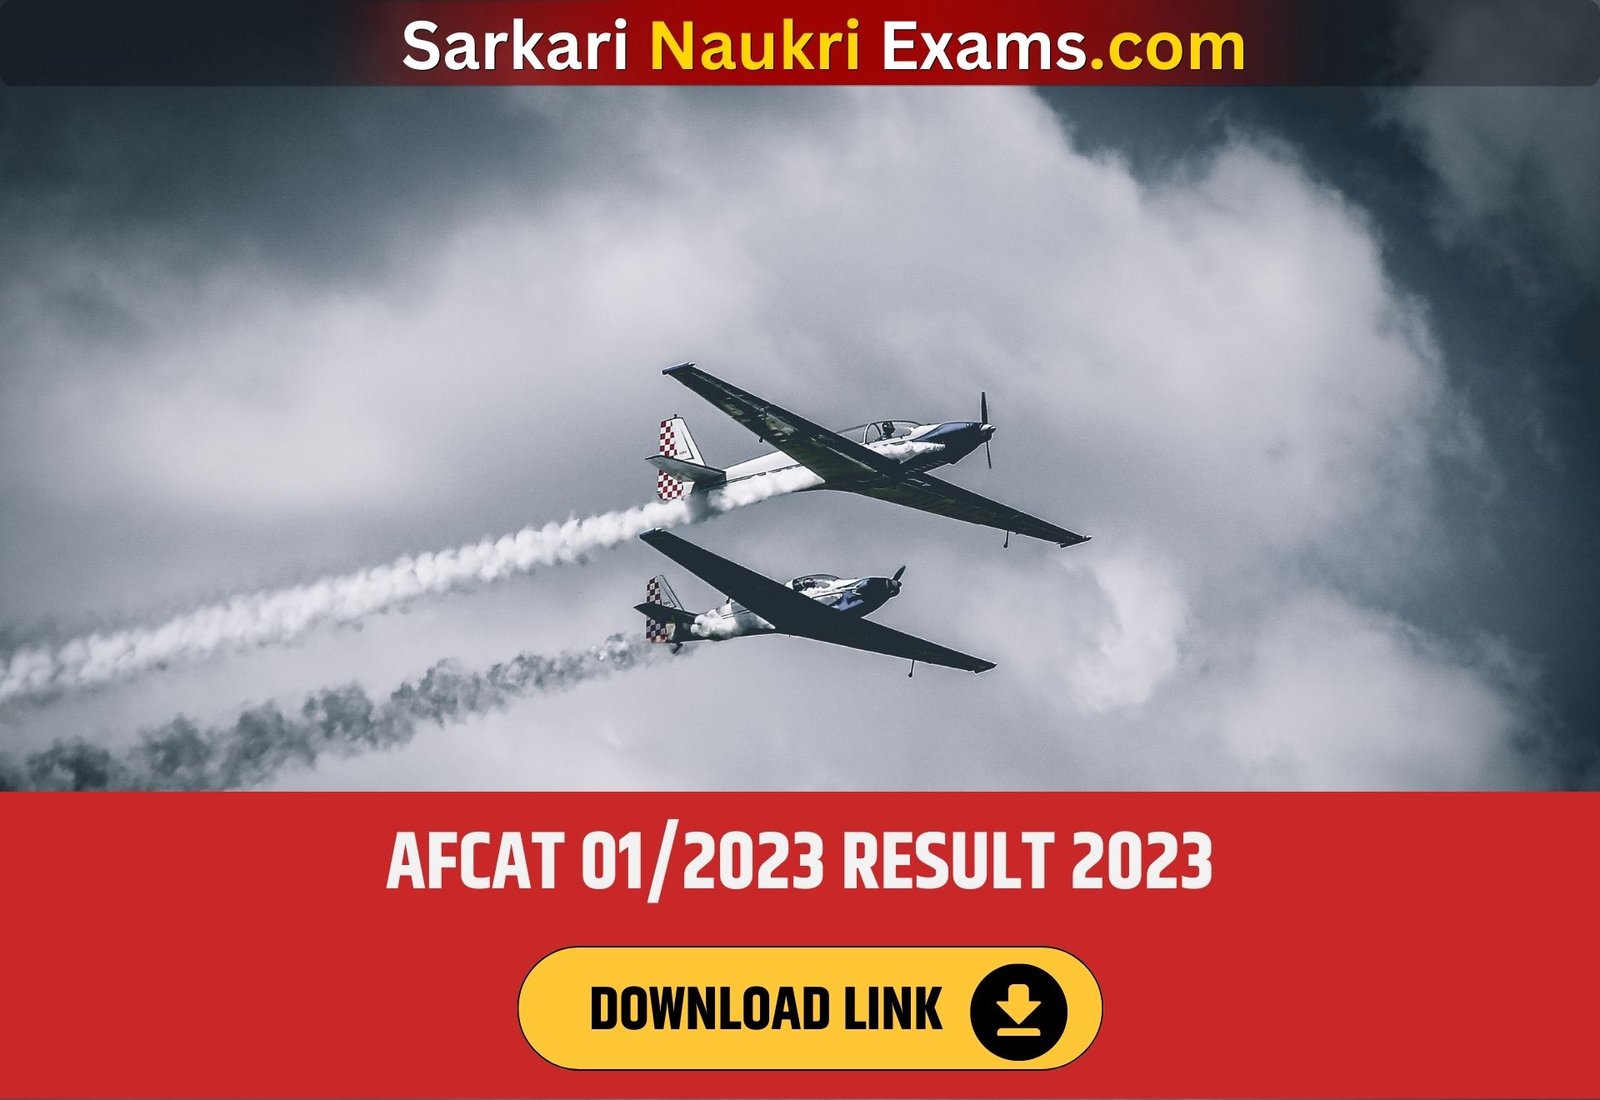 AFCAT 01/2023 Result (OUT) | Download Link, Cut Off